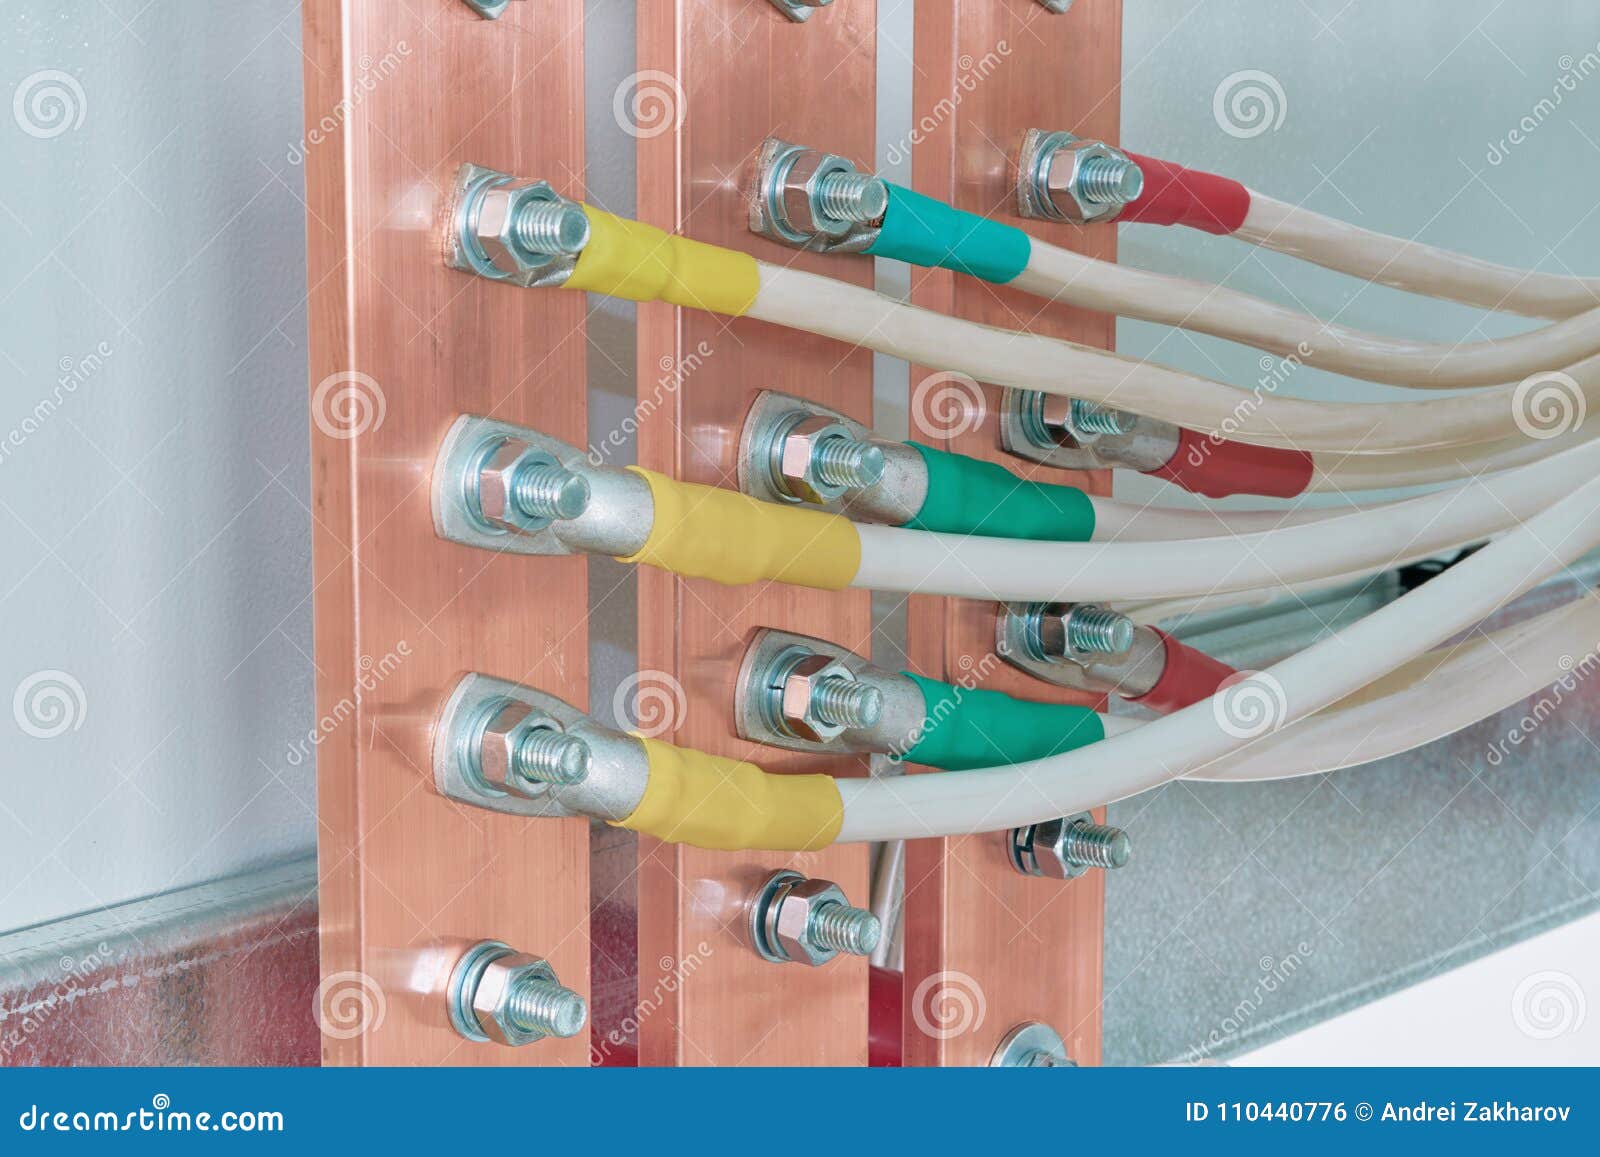 las-barras-de-distribuci%C3%B3n-el%C3%A9ctricas-conectaron-con-%C3%A9l-por-los-alambres-o-cables-110440776.jpg